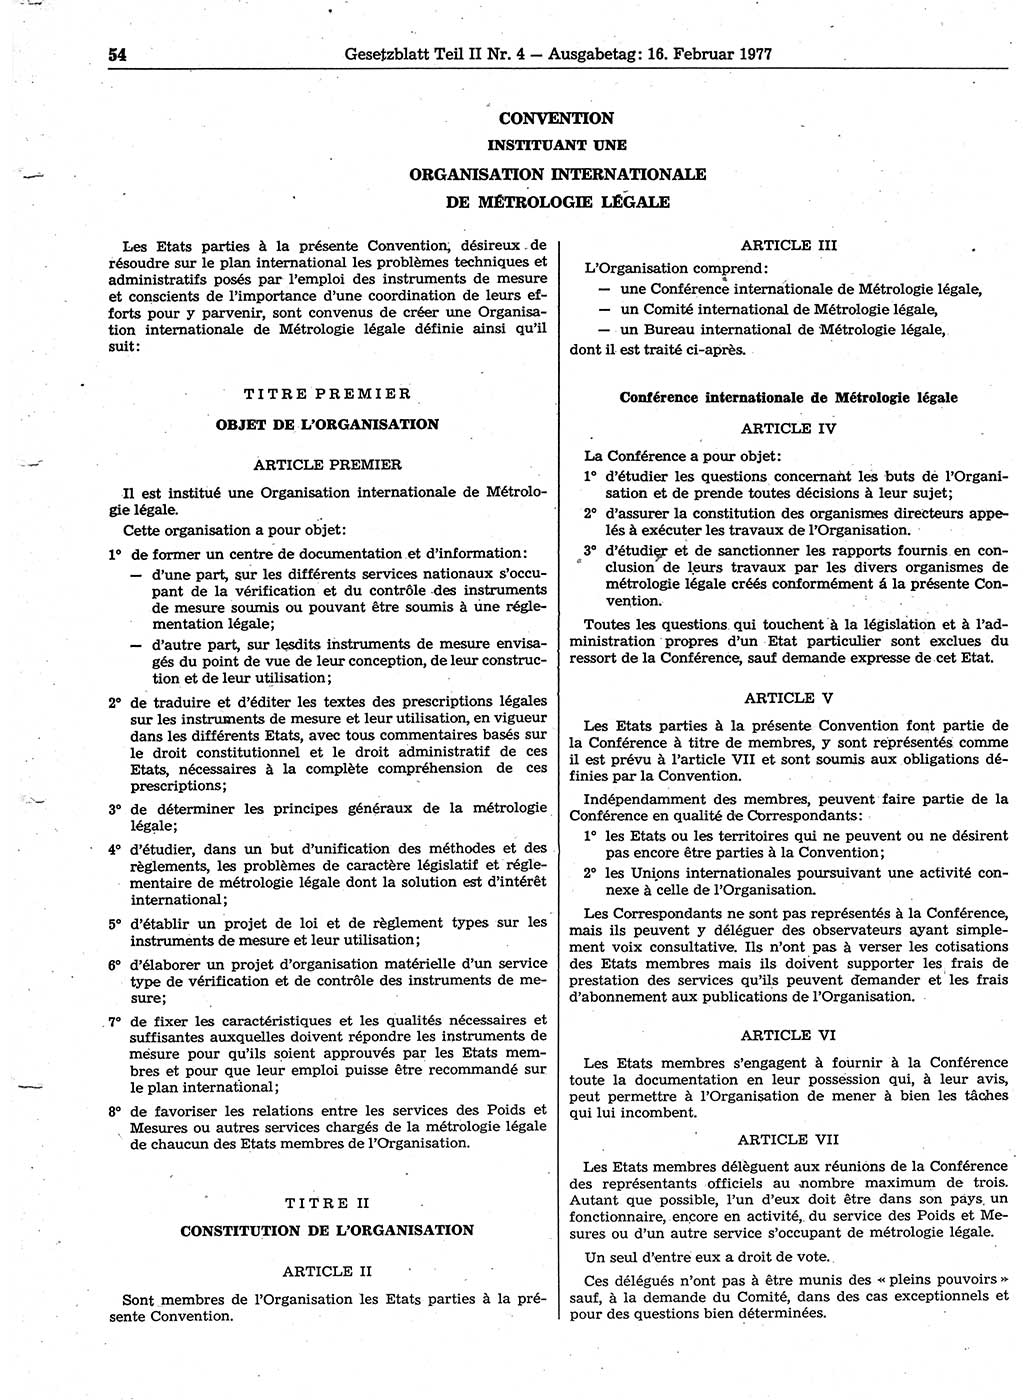 Gesetzblatt (GBl.) der Deutschen Demokratischen Republik (DDR) Teil ⅠⅠ 1977, Seite 54 (GBl. DDR ⅠⅠ 1977, S. 54)